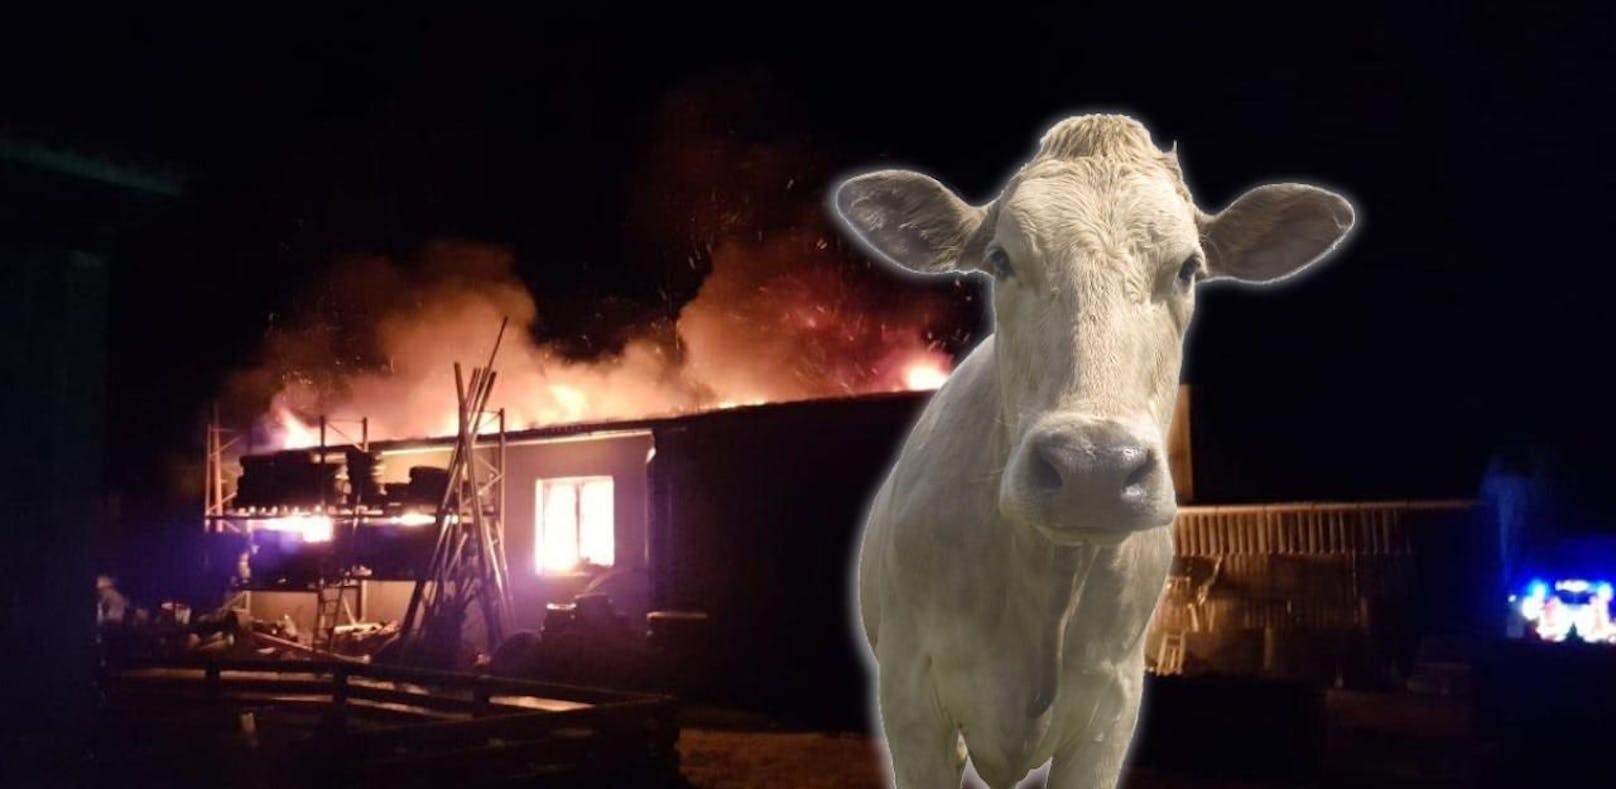 Feuerwehr rettet bei Brand Leben von 100 Rindern